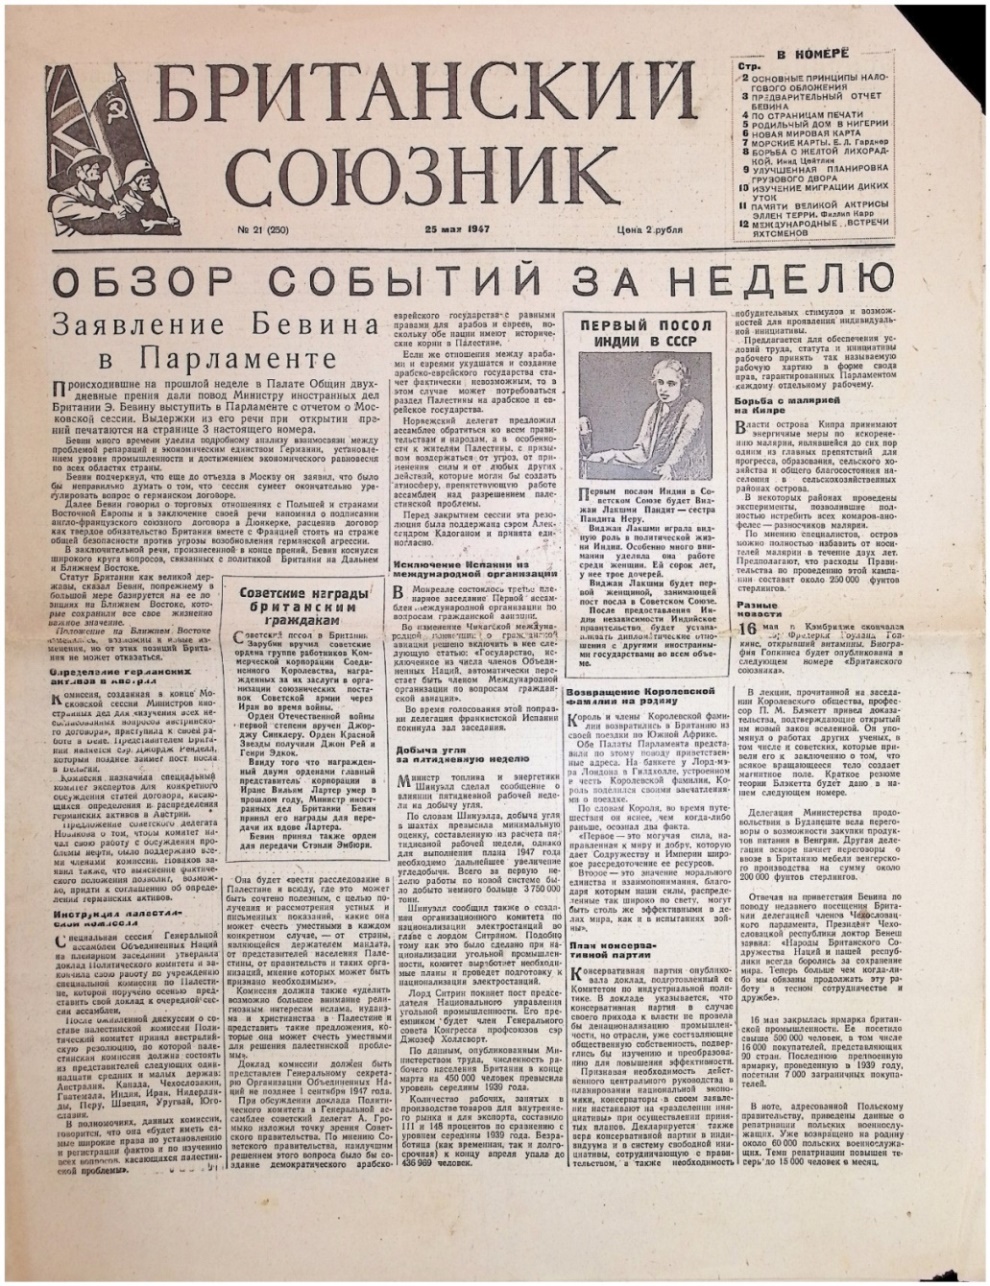 Газета "Британский союзник" № 21 (250) від 25 травня 1947р.